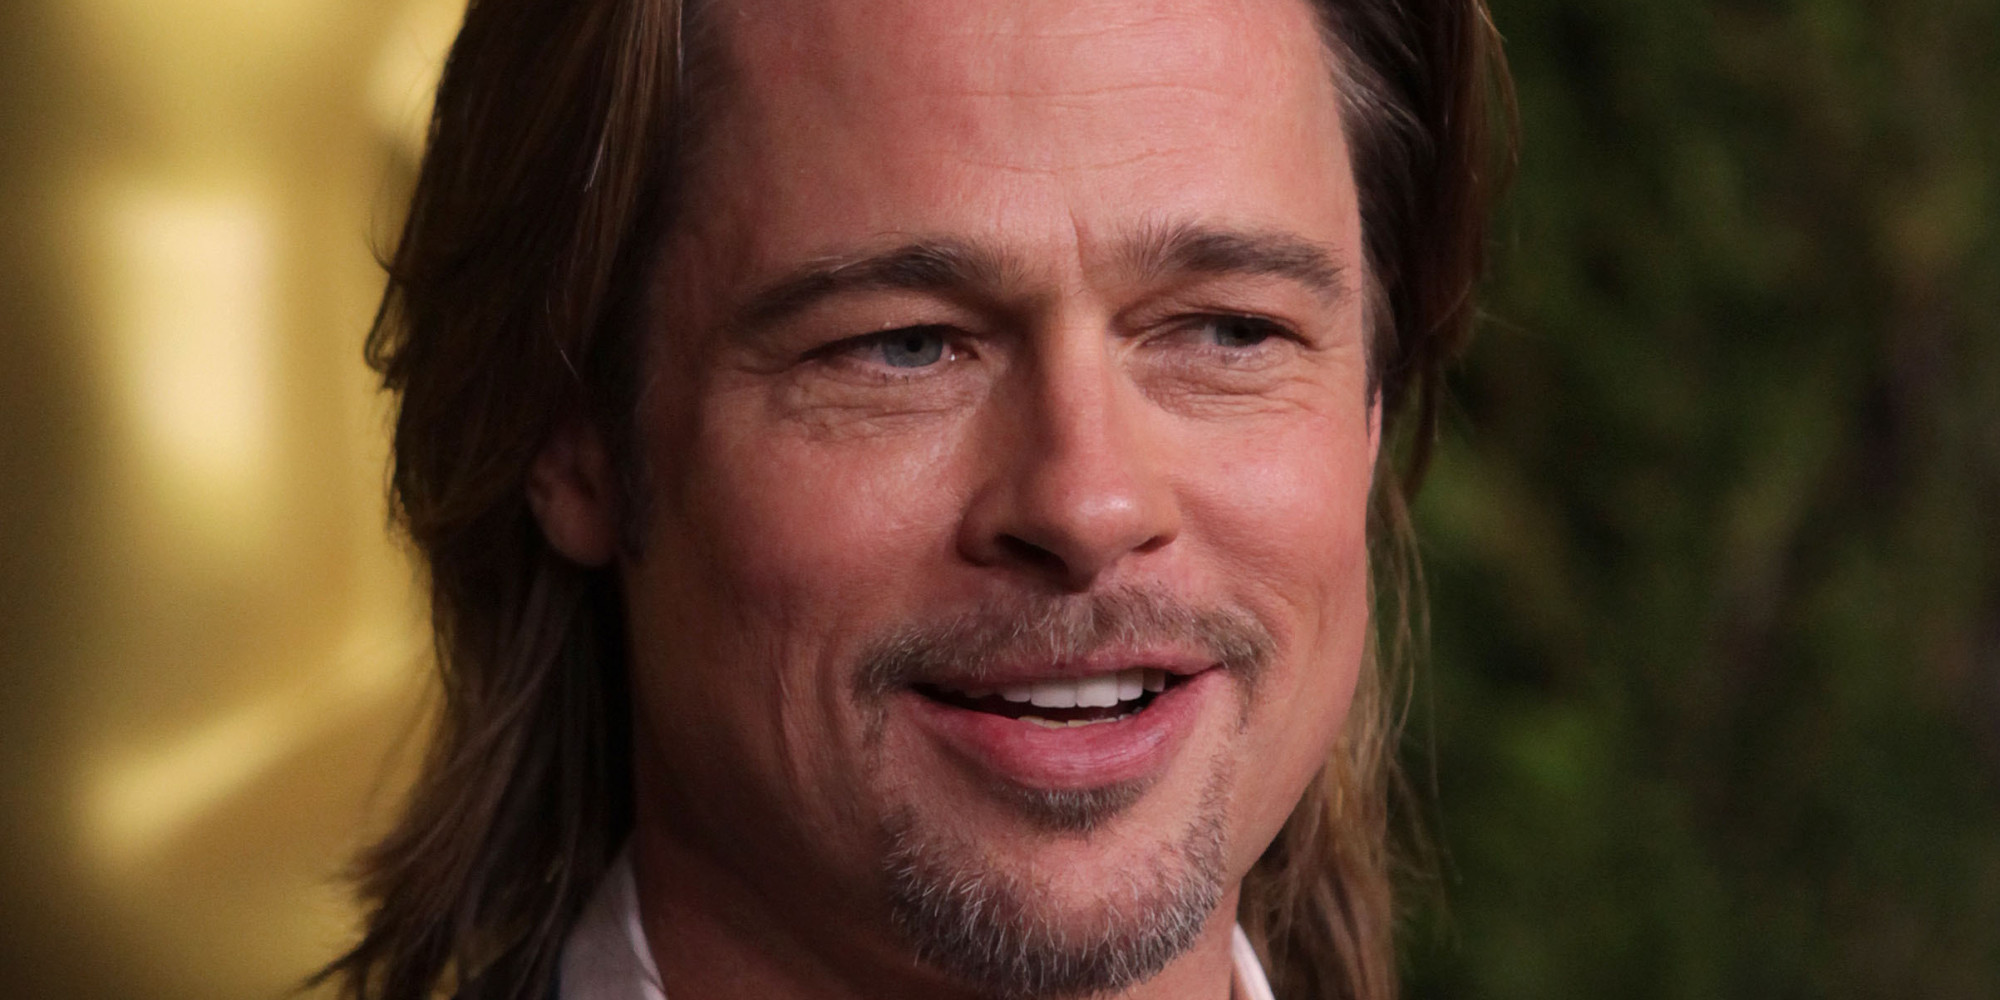 War Brad Pitt mit Jennifer Aniston oder Angelina Jolie glücklicher? Das sagt ... - Huffington Post Deutschland